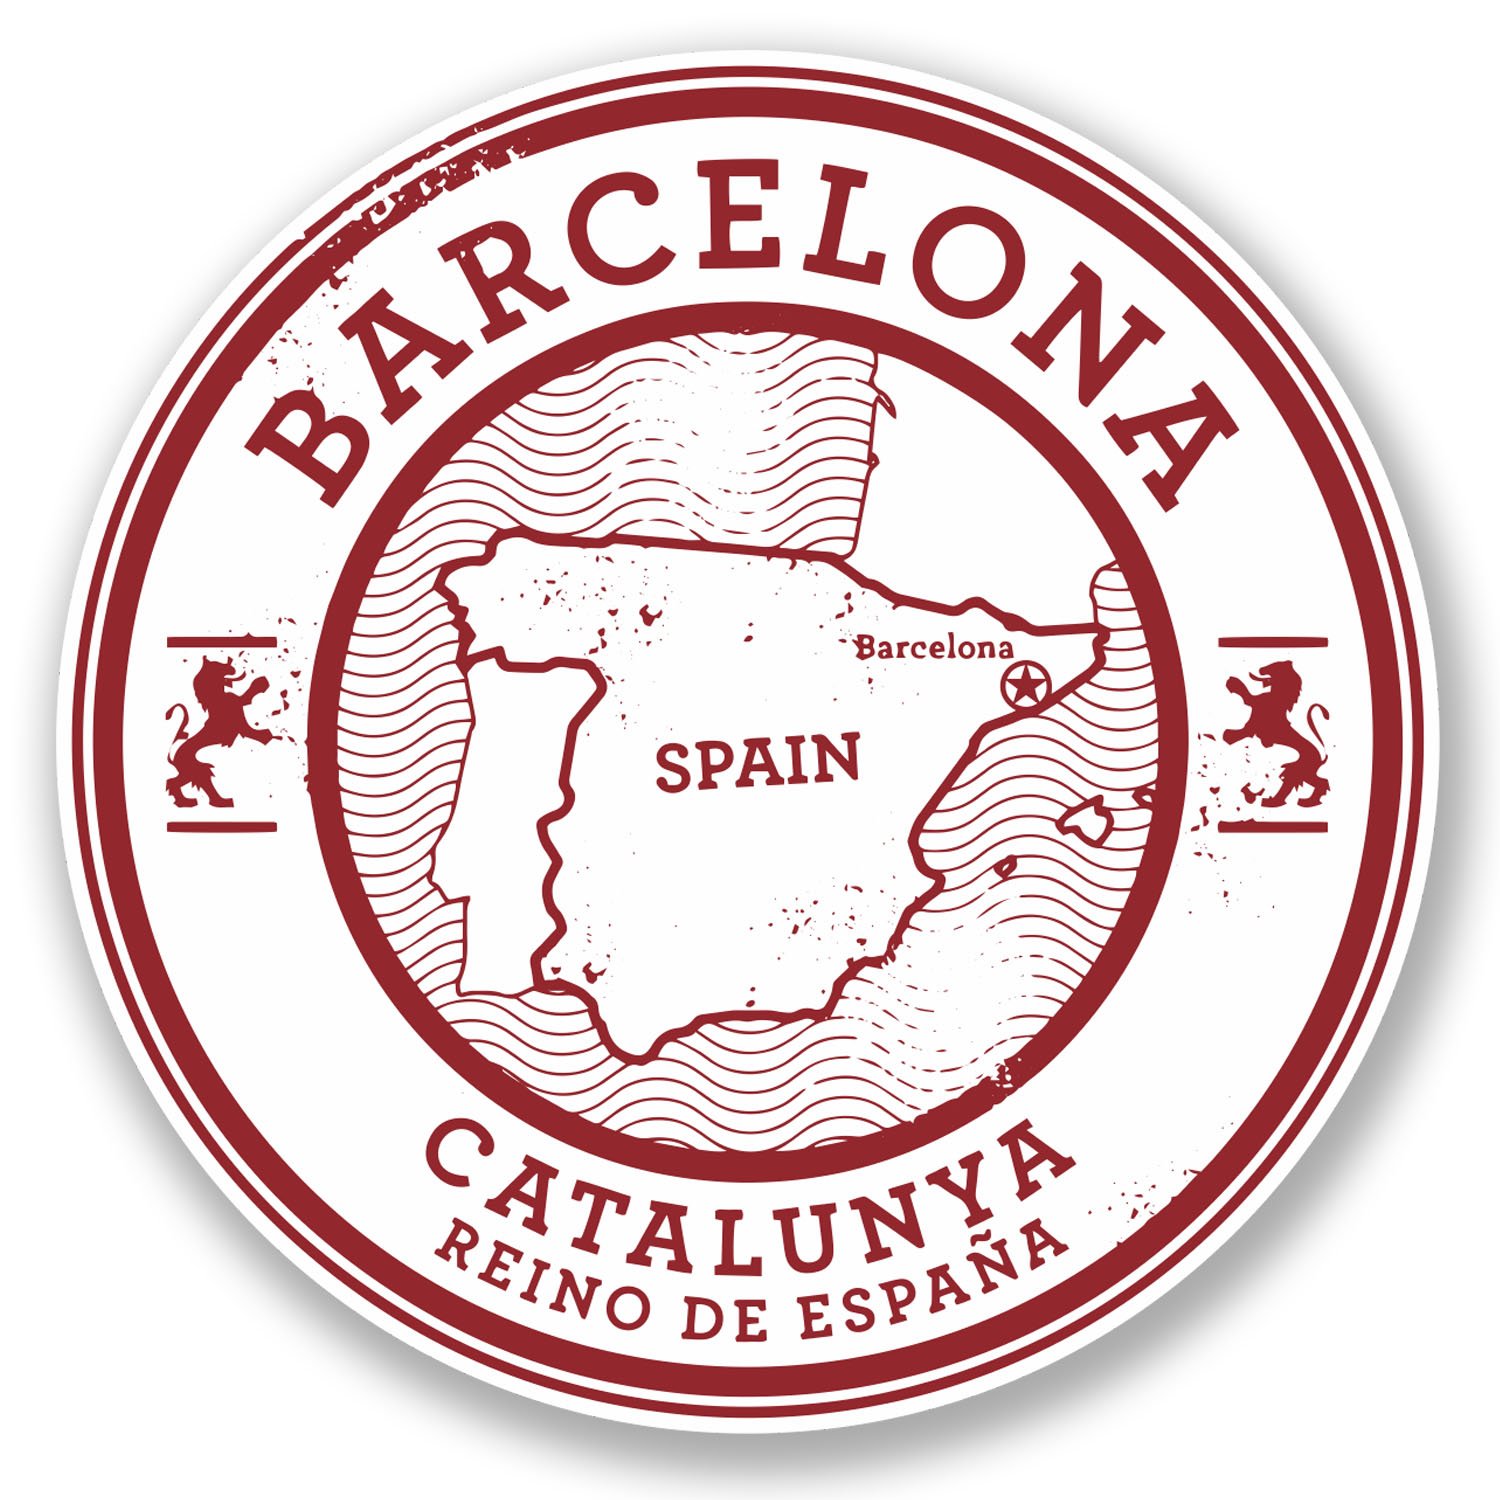 2 x Barcelona Catalunya Spanien Vinyl-Aufkleber Aufkleber Reisegepäckanhänger #5723 (10 cm x 10 cm) von DestinationVinyl